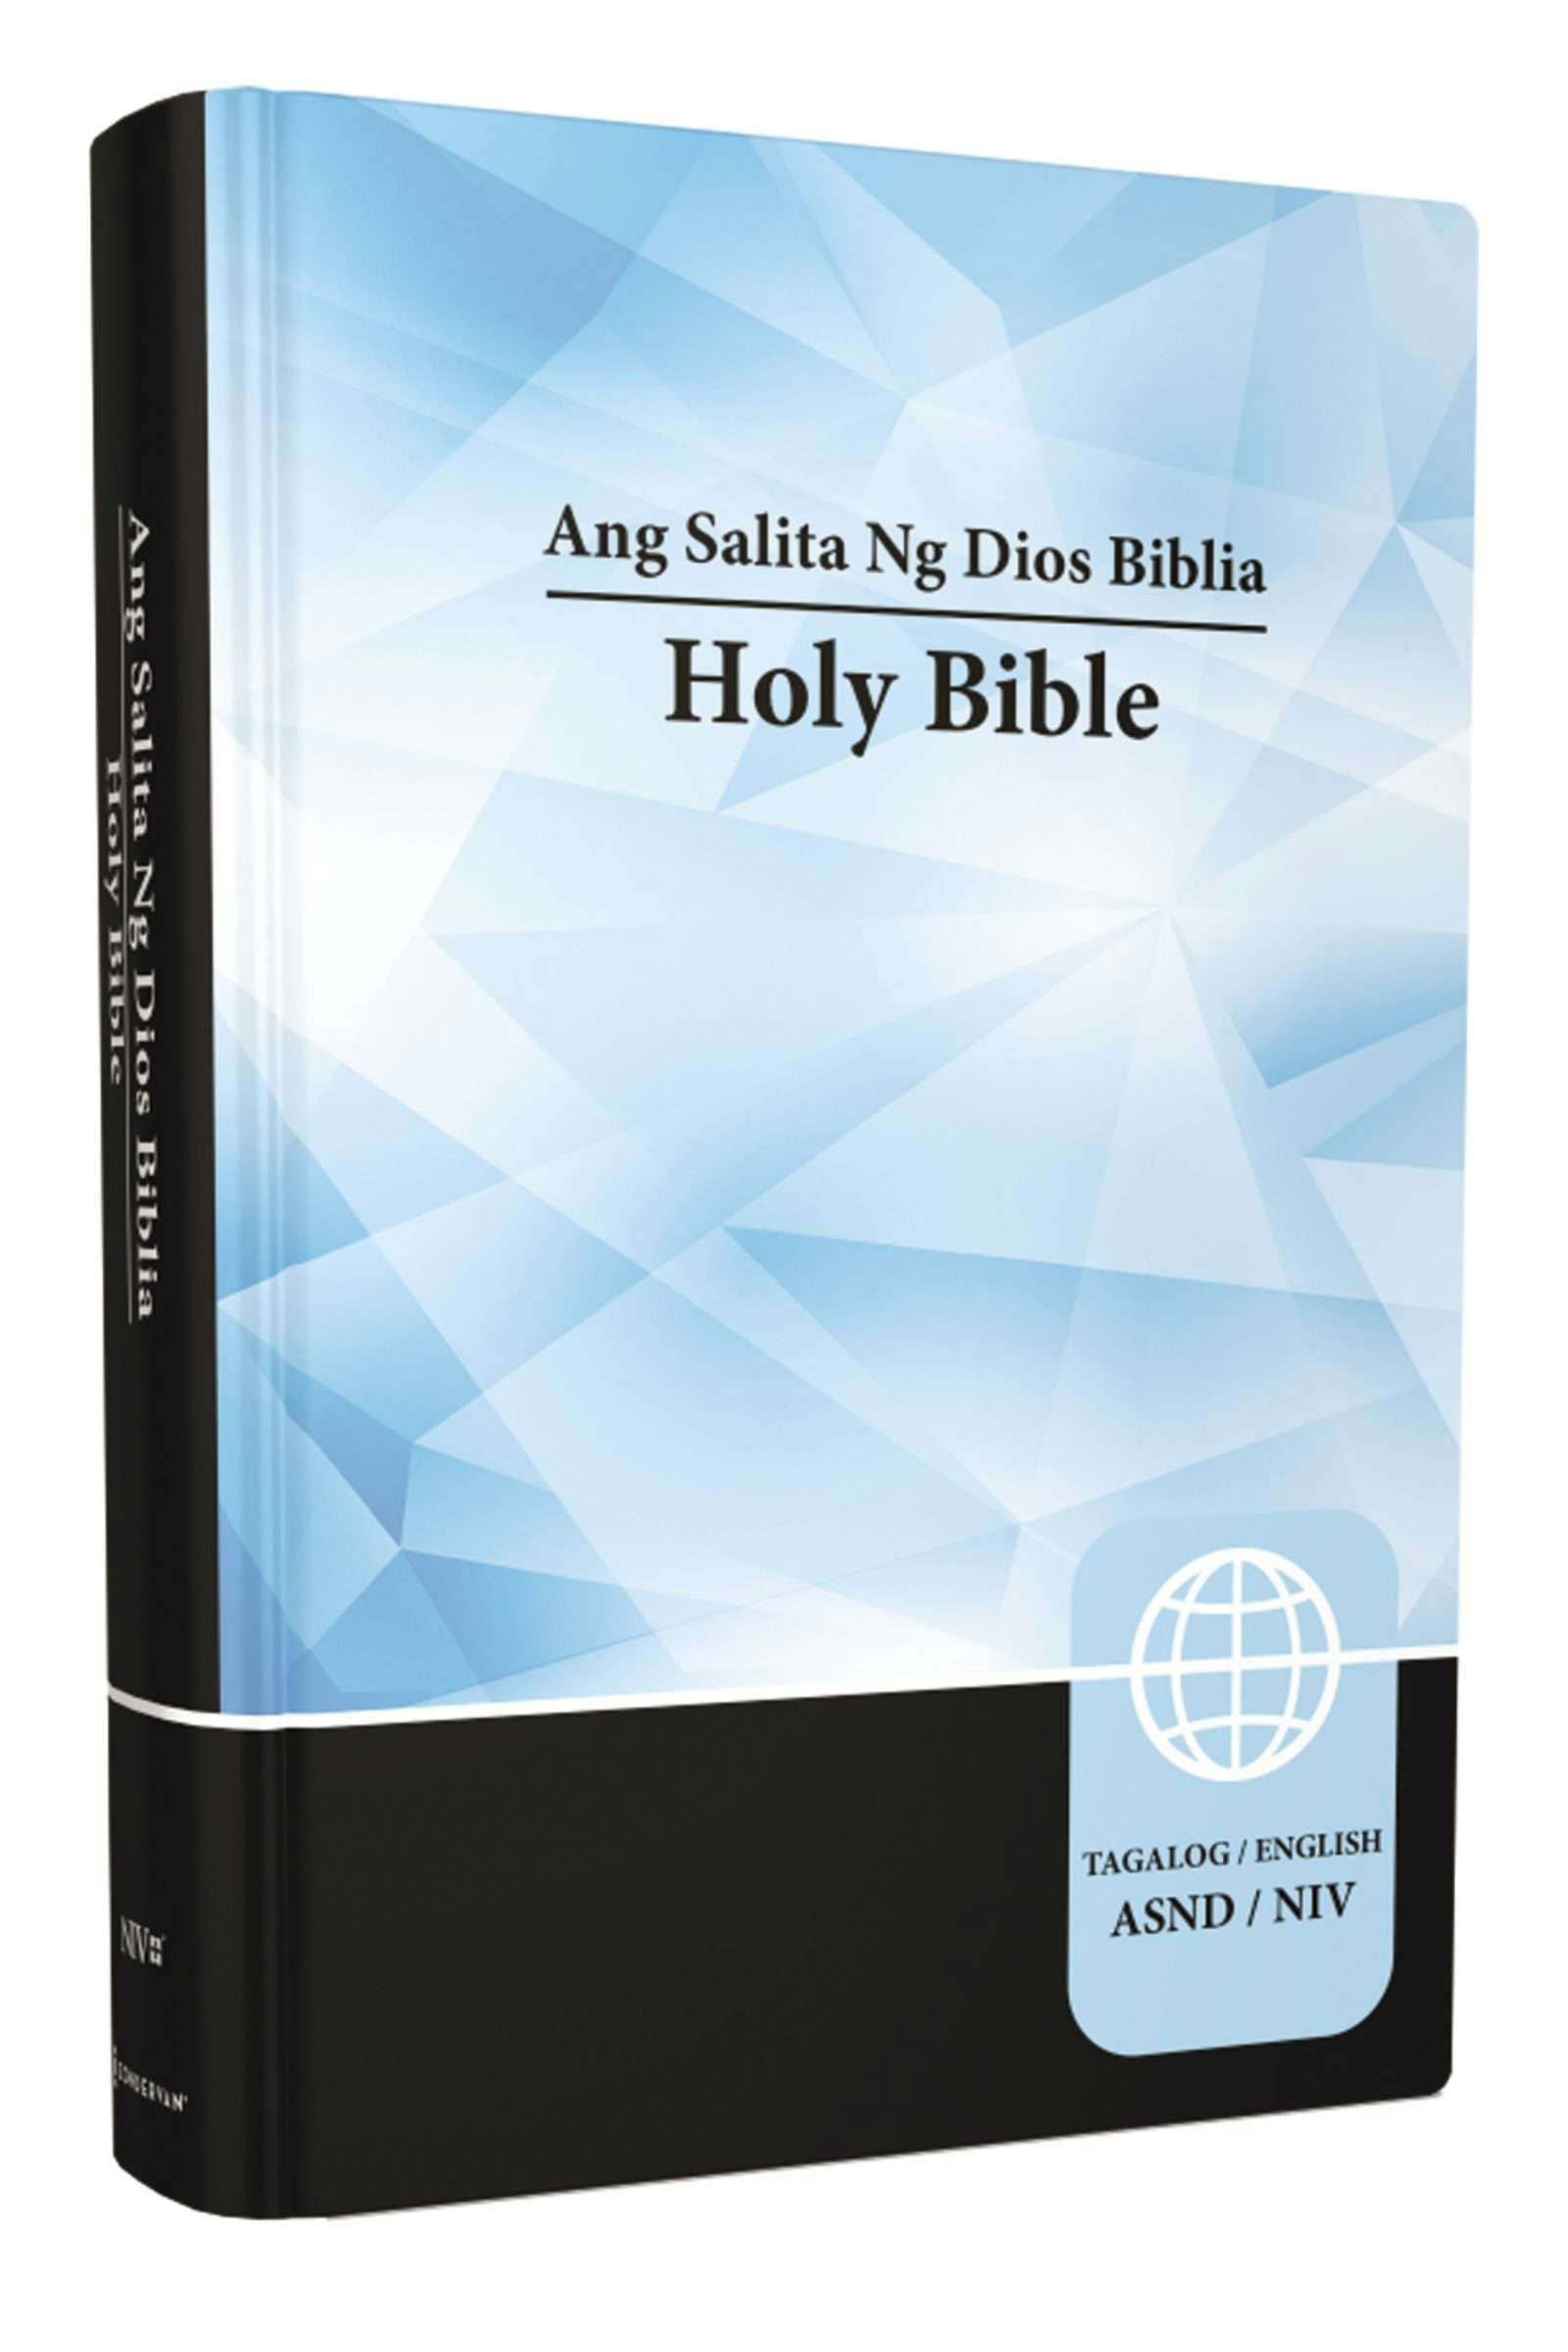 Bible Tagalog Niv For Pc